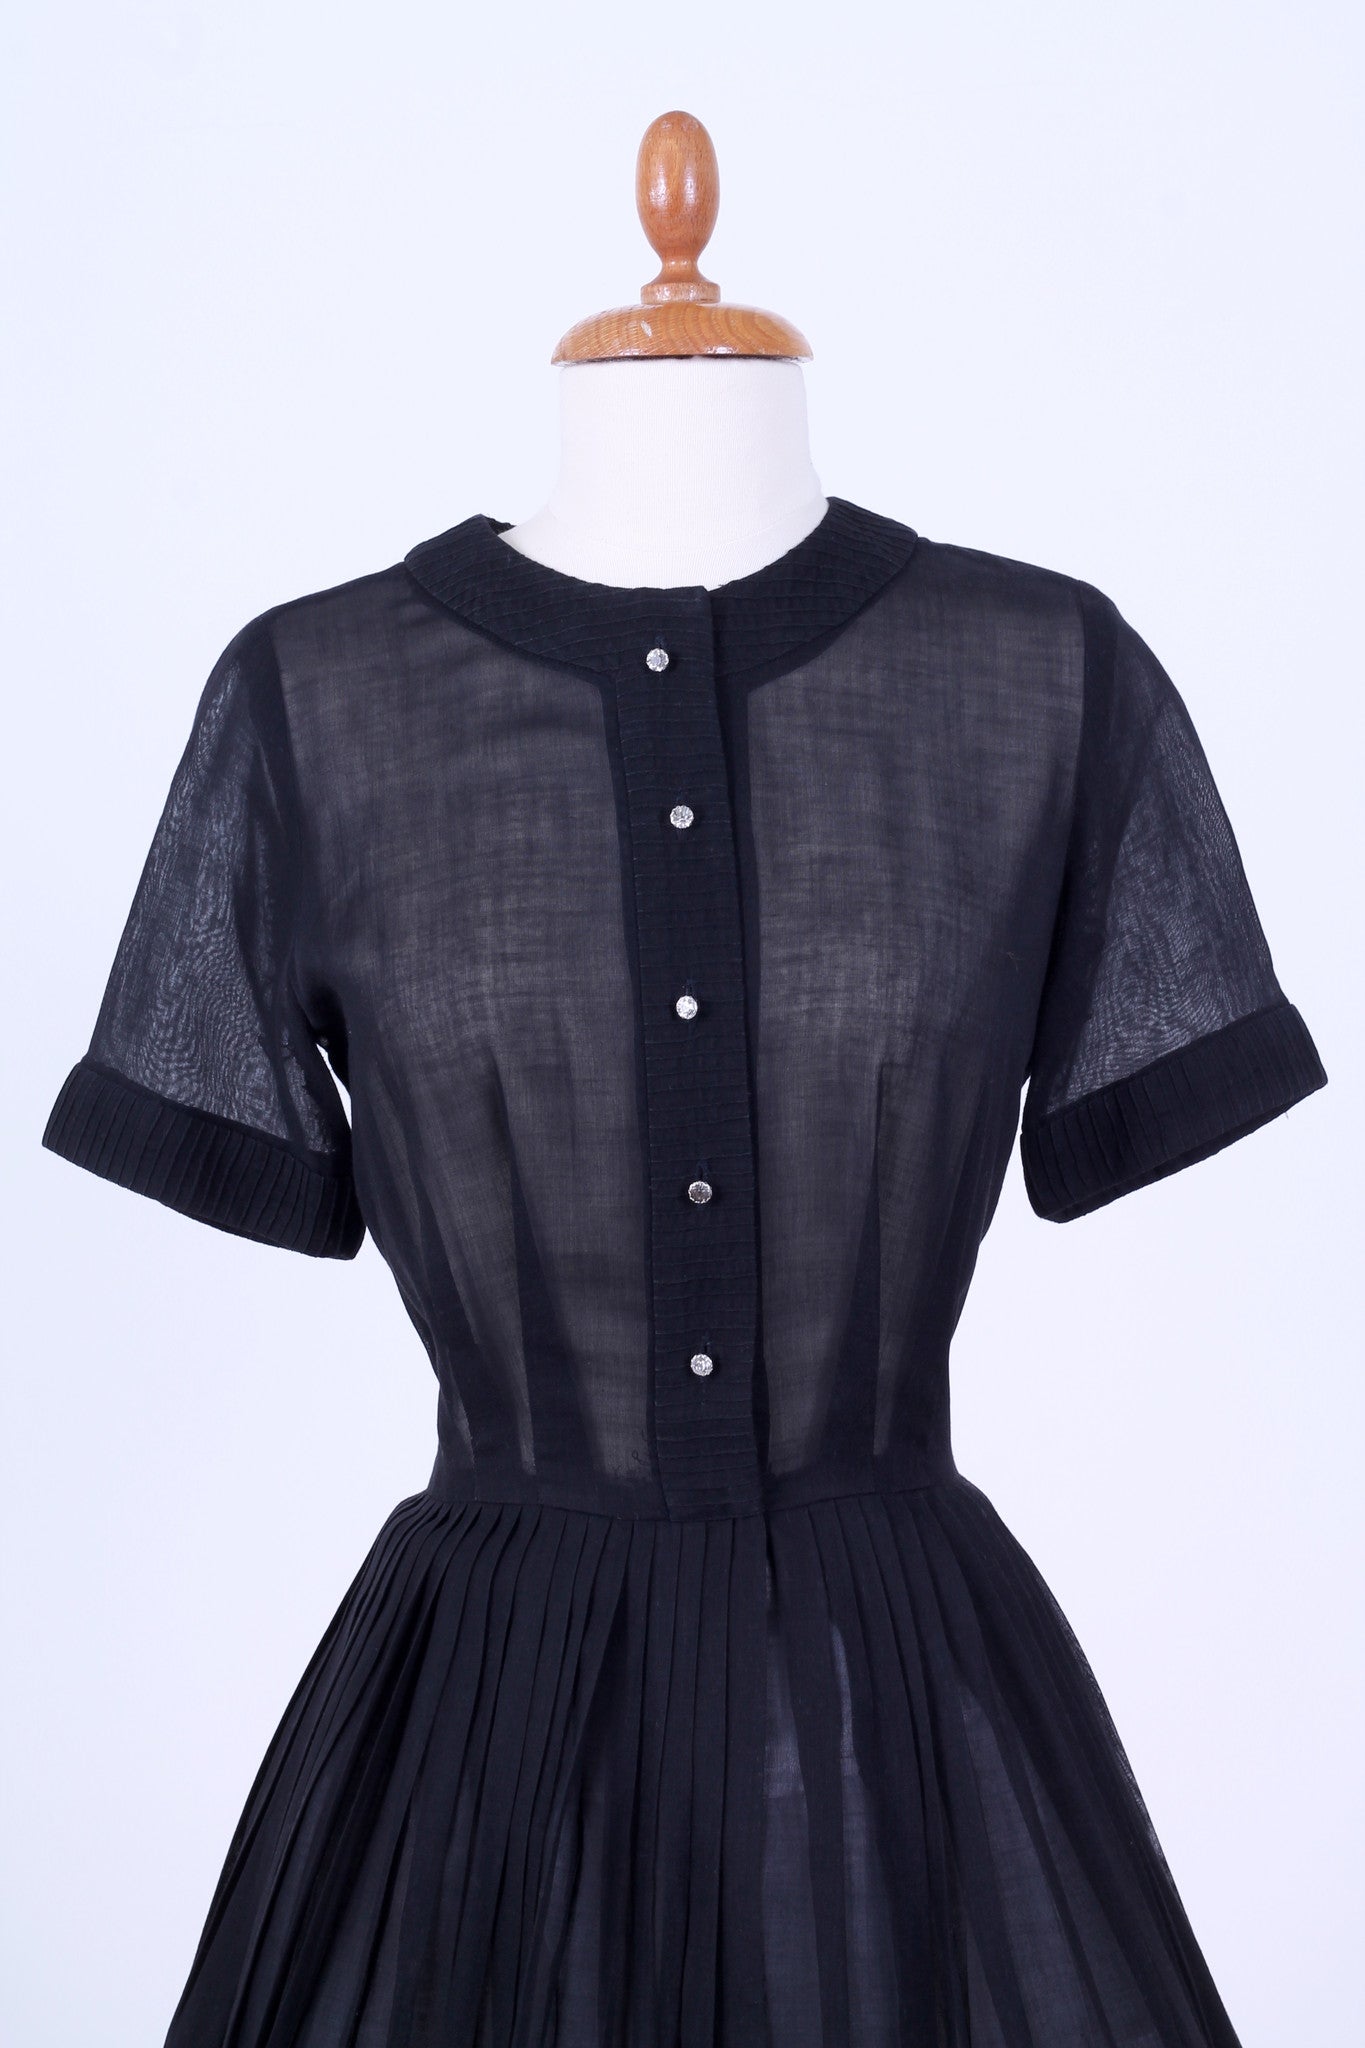 Solgt vintage tøj - Sort hverdagskjole i organza 1950. XS-S - solgt - Vintage Divine - 4